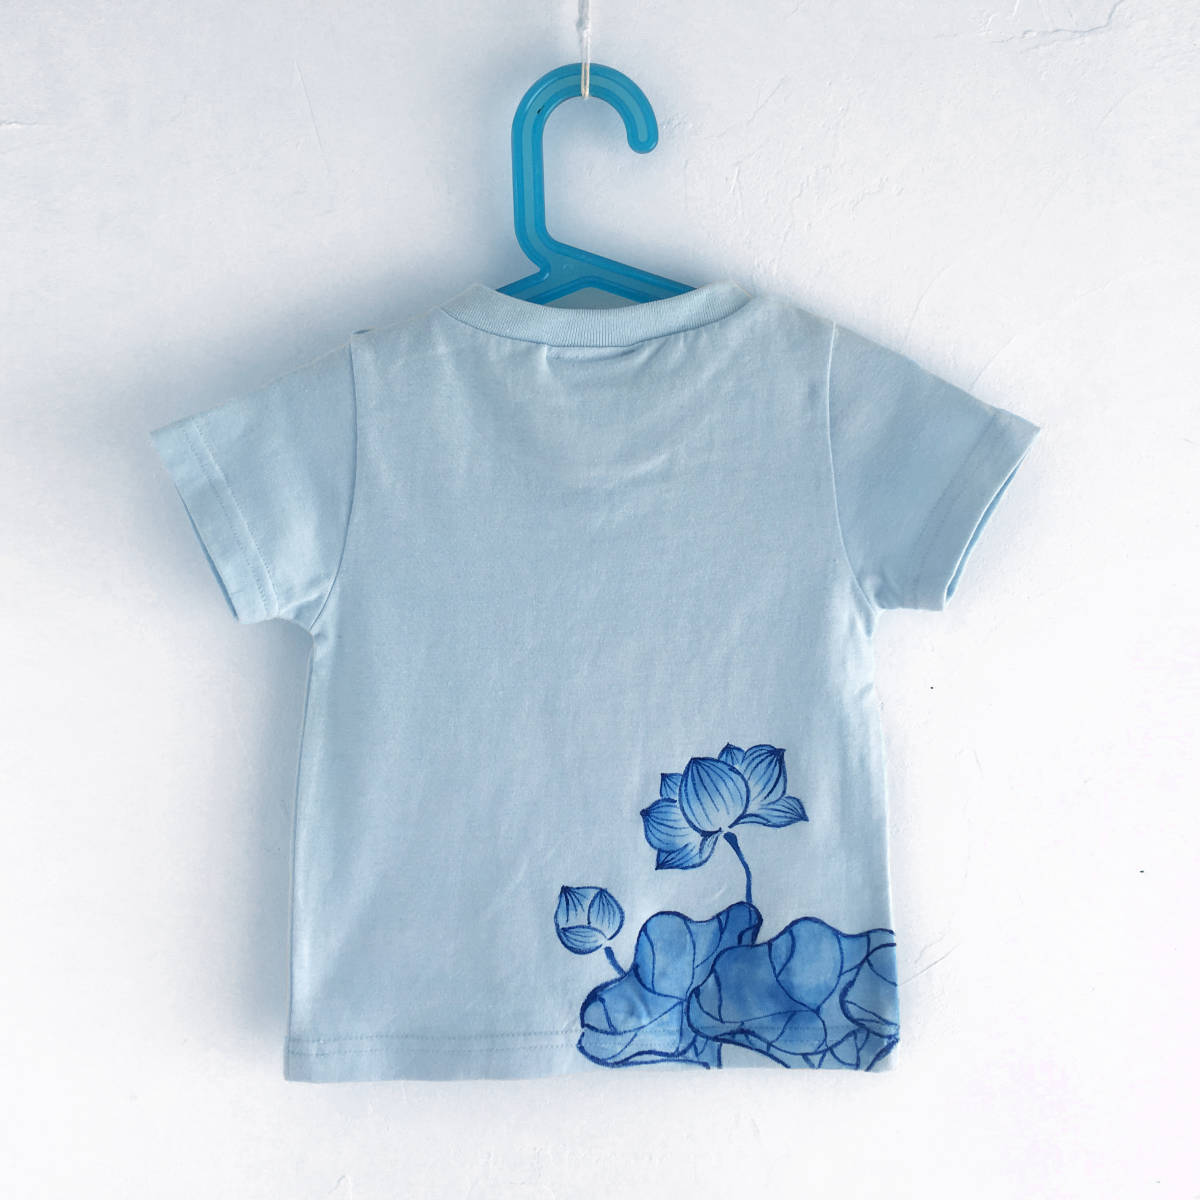 キッズ Tシャツ 110サイズ ブルー 蓮柄Tシャツ 手描きで描いた蓮の花柄Tシャツ 半袖 和柄 和風 レトロ ハンドメイド_画像3